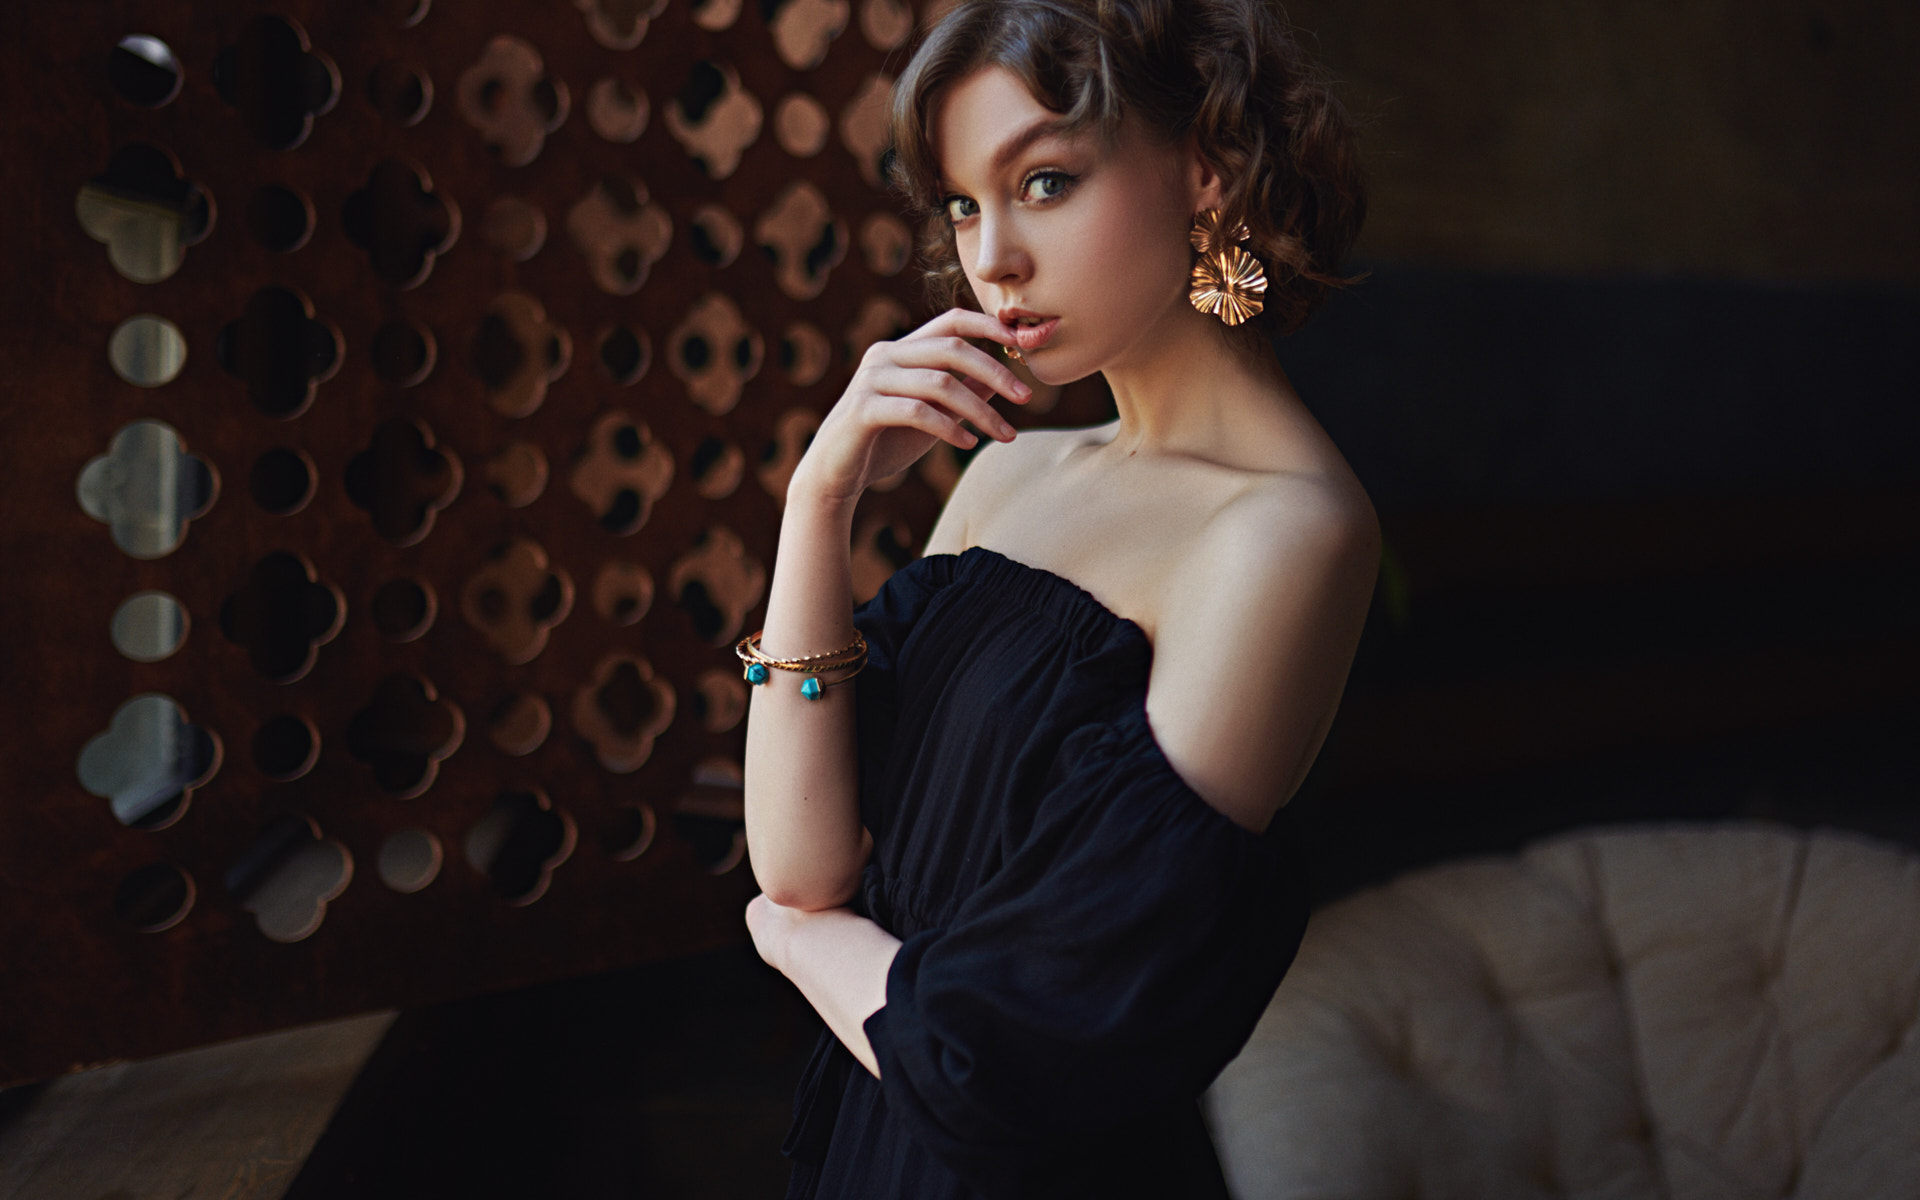 Sergey Fat Women Olya Pushkina Brunette Short Hair Jewelry Earring Dress Bracelets Bare Shoulders Bl 1920x1200